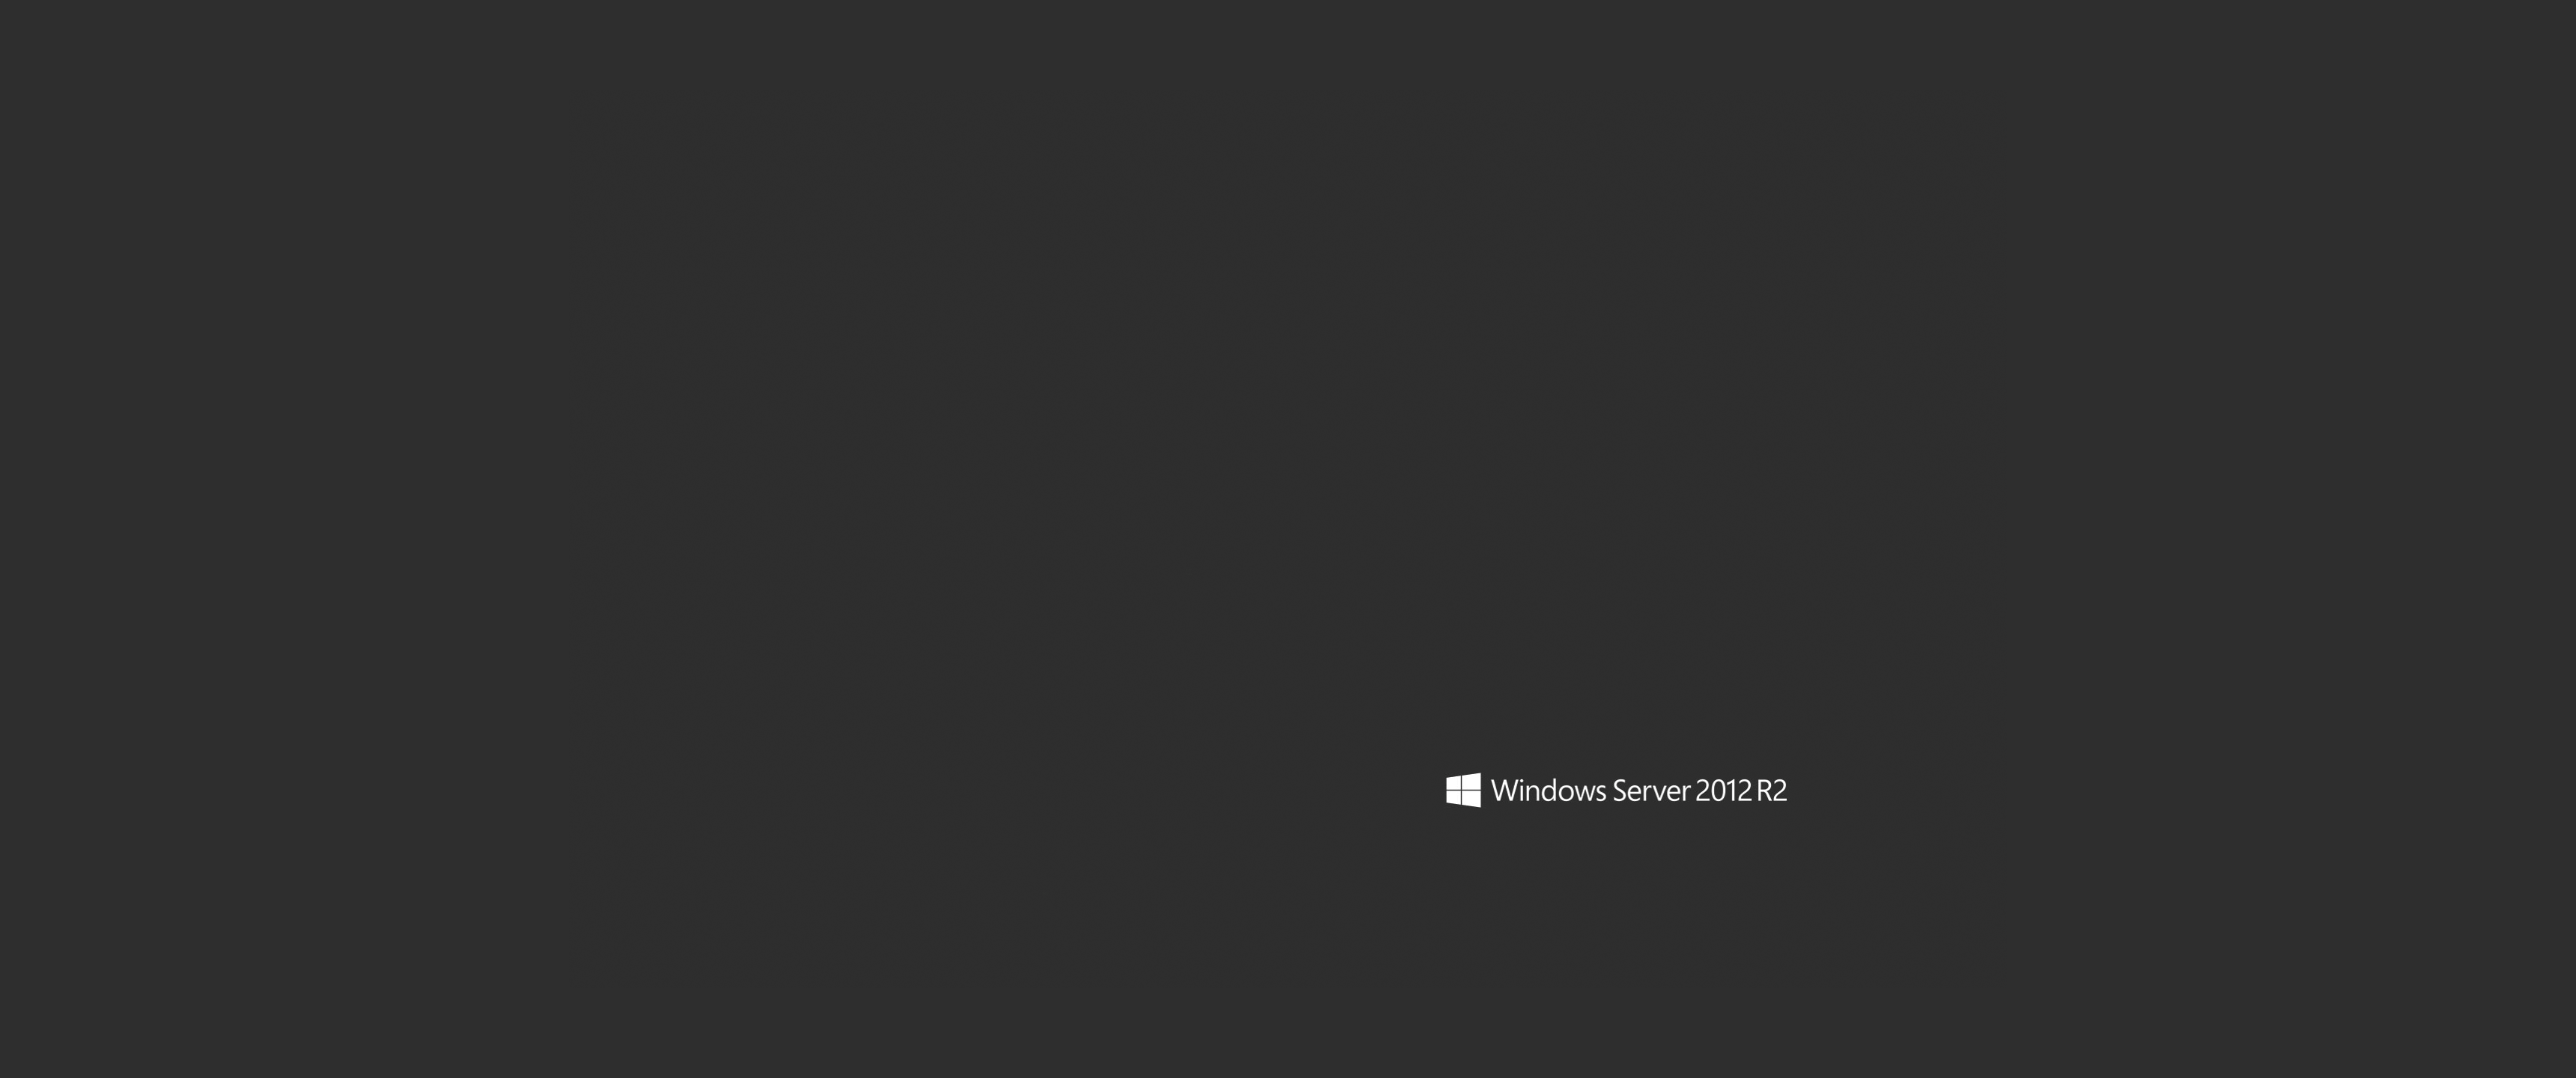 윈도우 서버 2012 r2 벽지,검정,본문,갈색,폰트,하늘